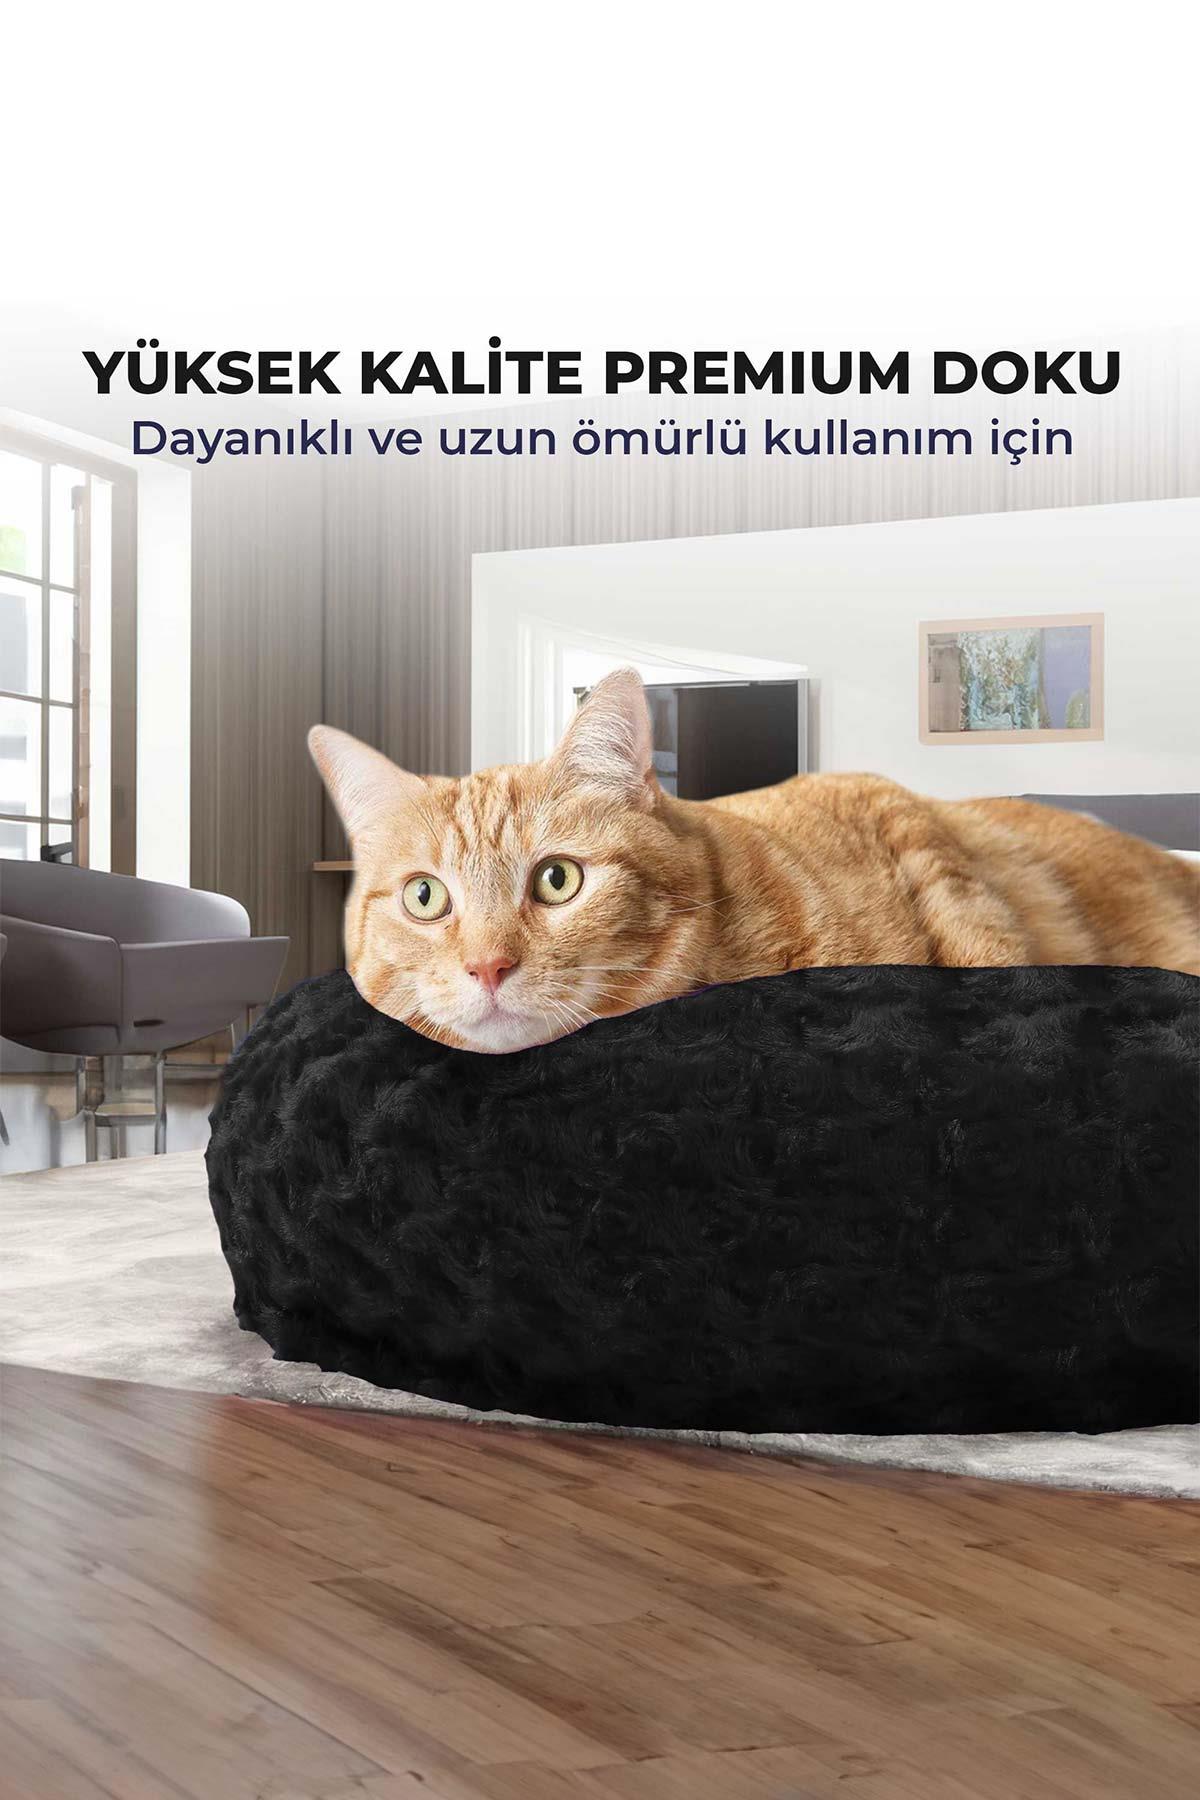 kedi kopek yuvarlak yatak pelus kedi kopek yatagi simit yatak siyah 50x40x12 cm 120327.jpg